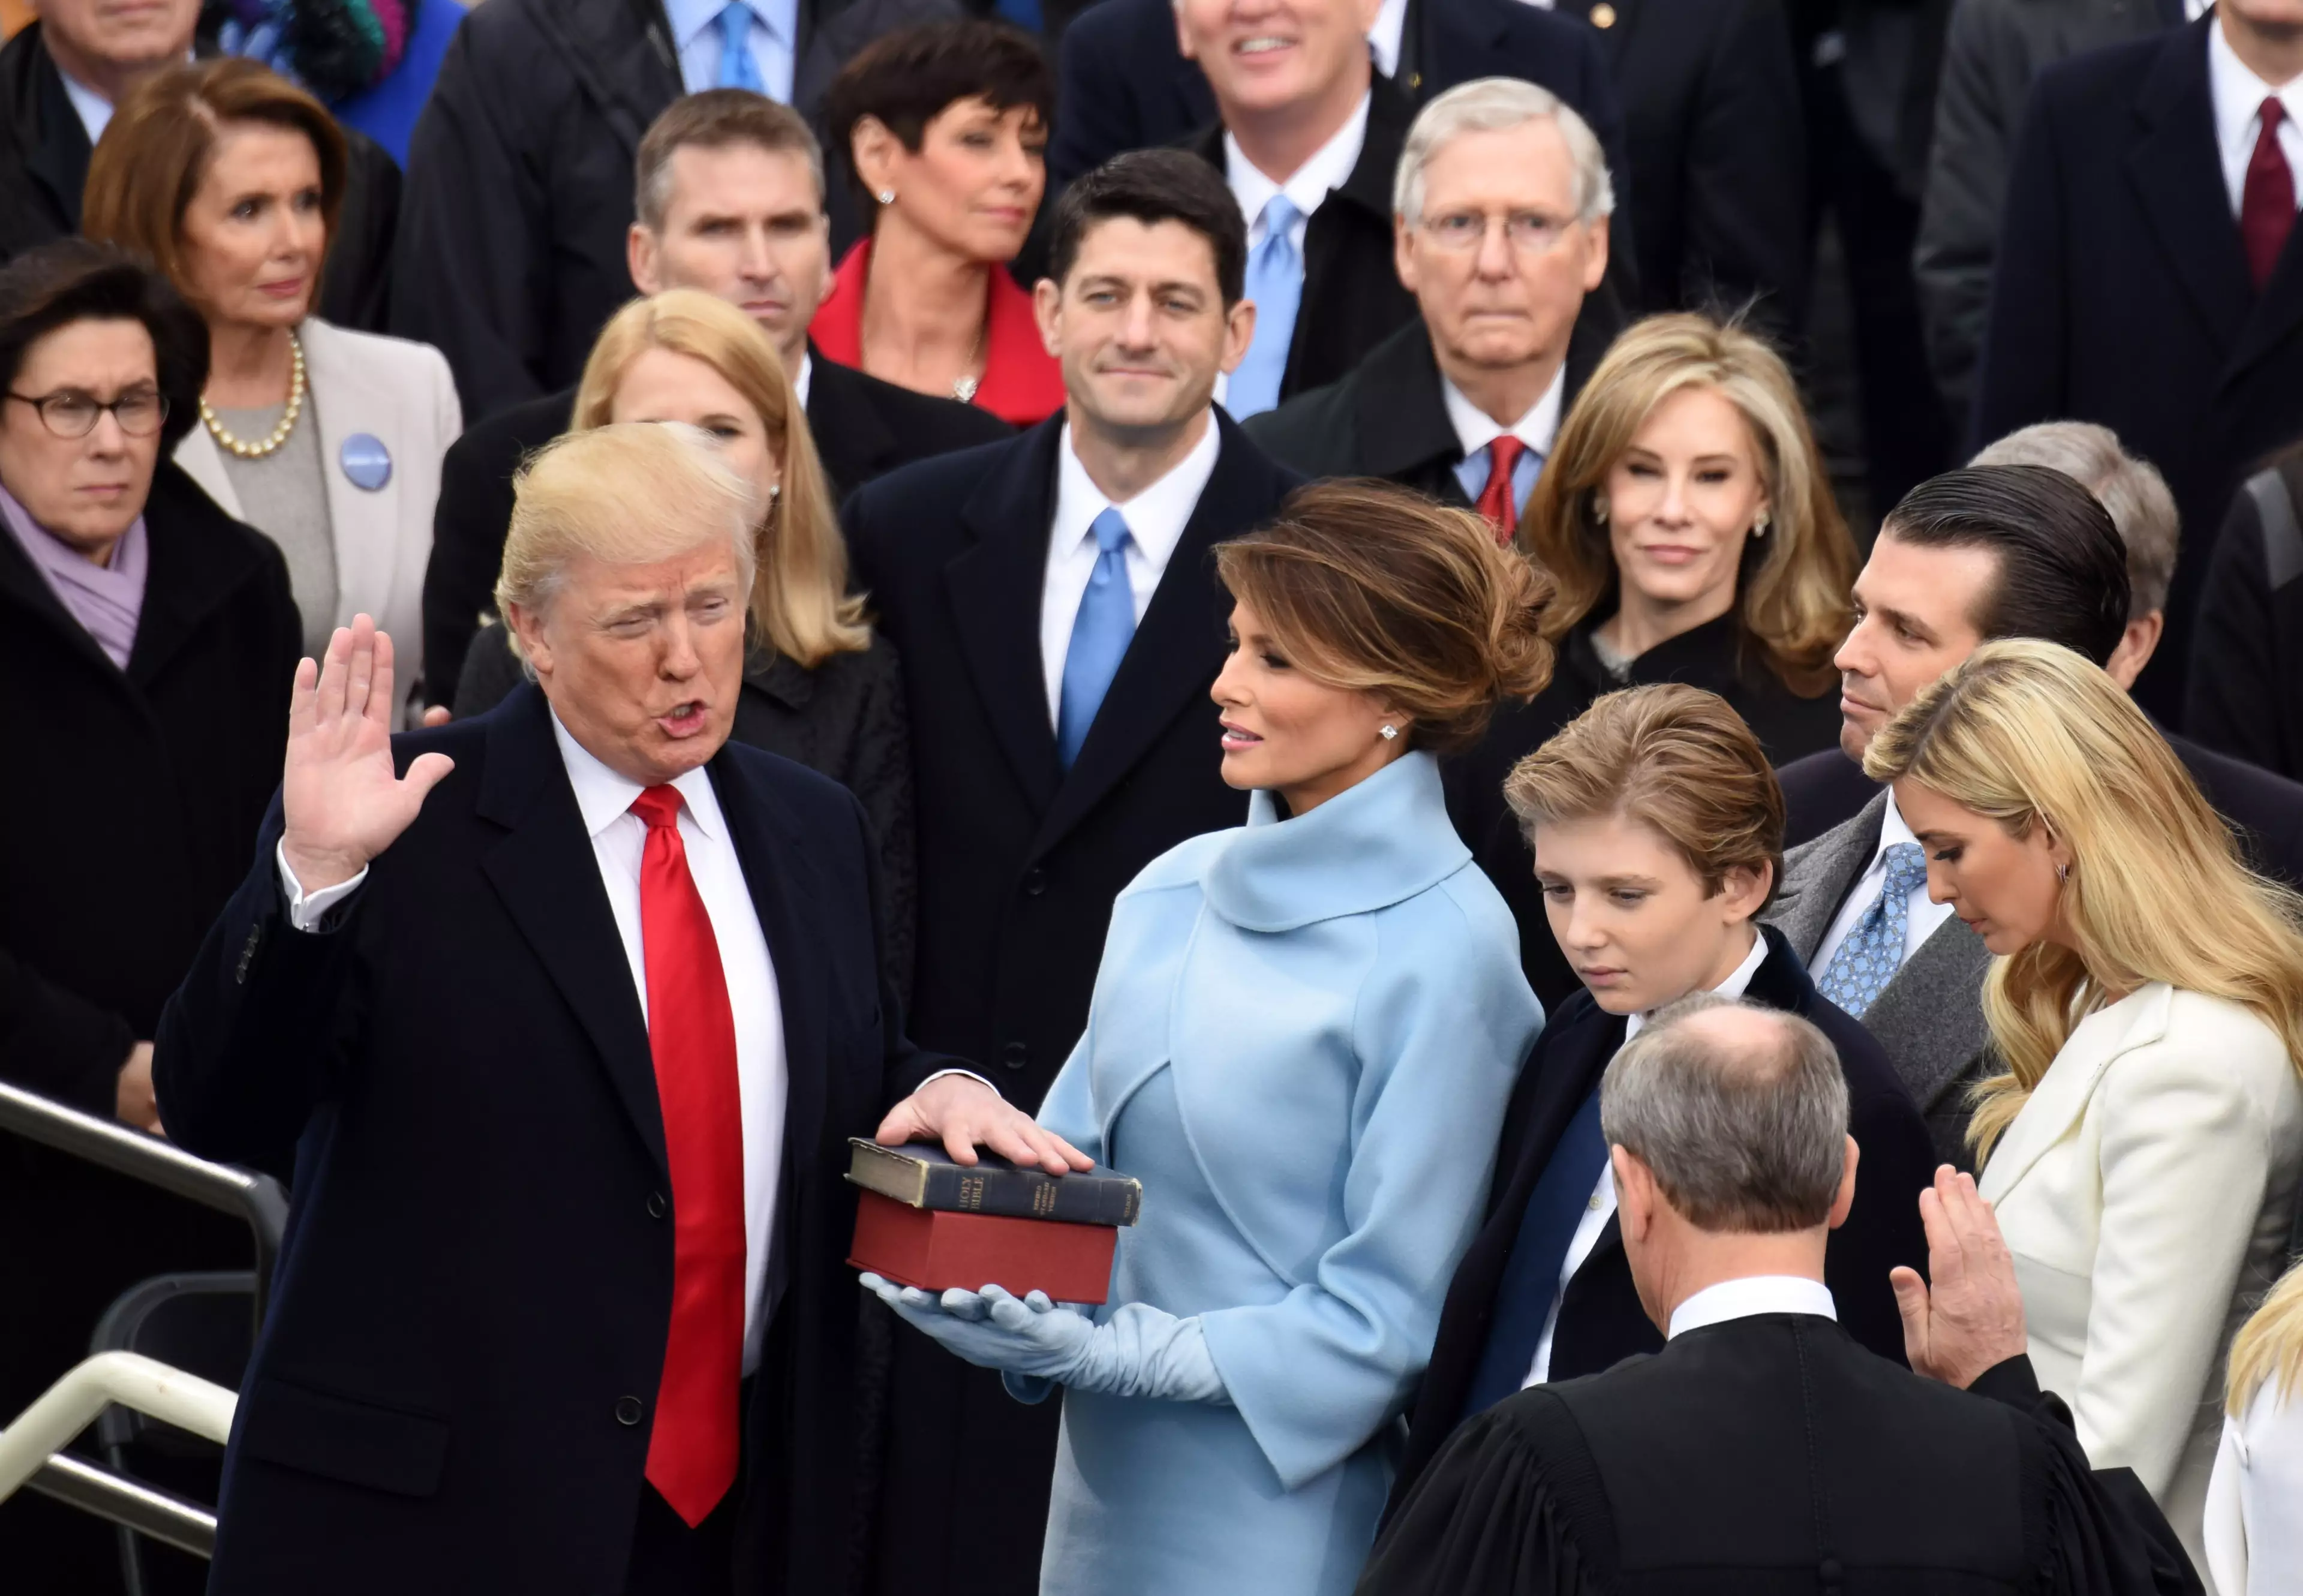 Donald Trump being sworn in 2017.